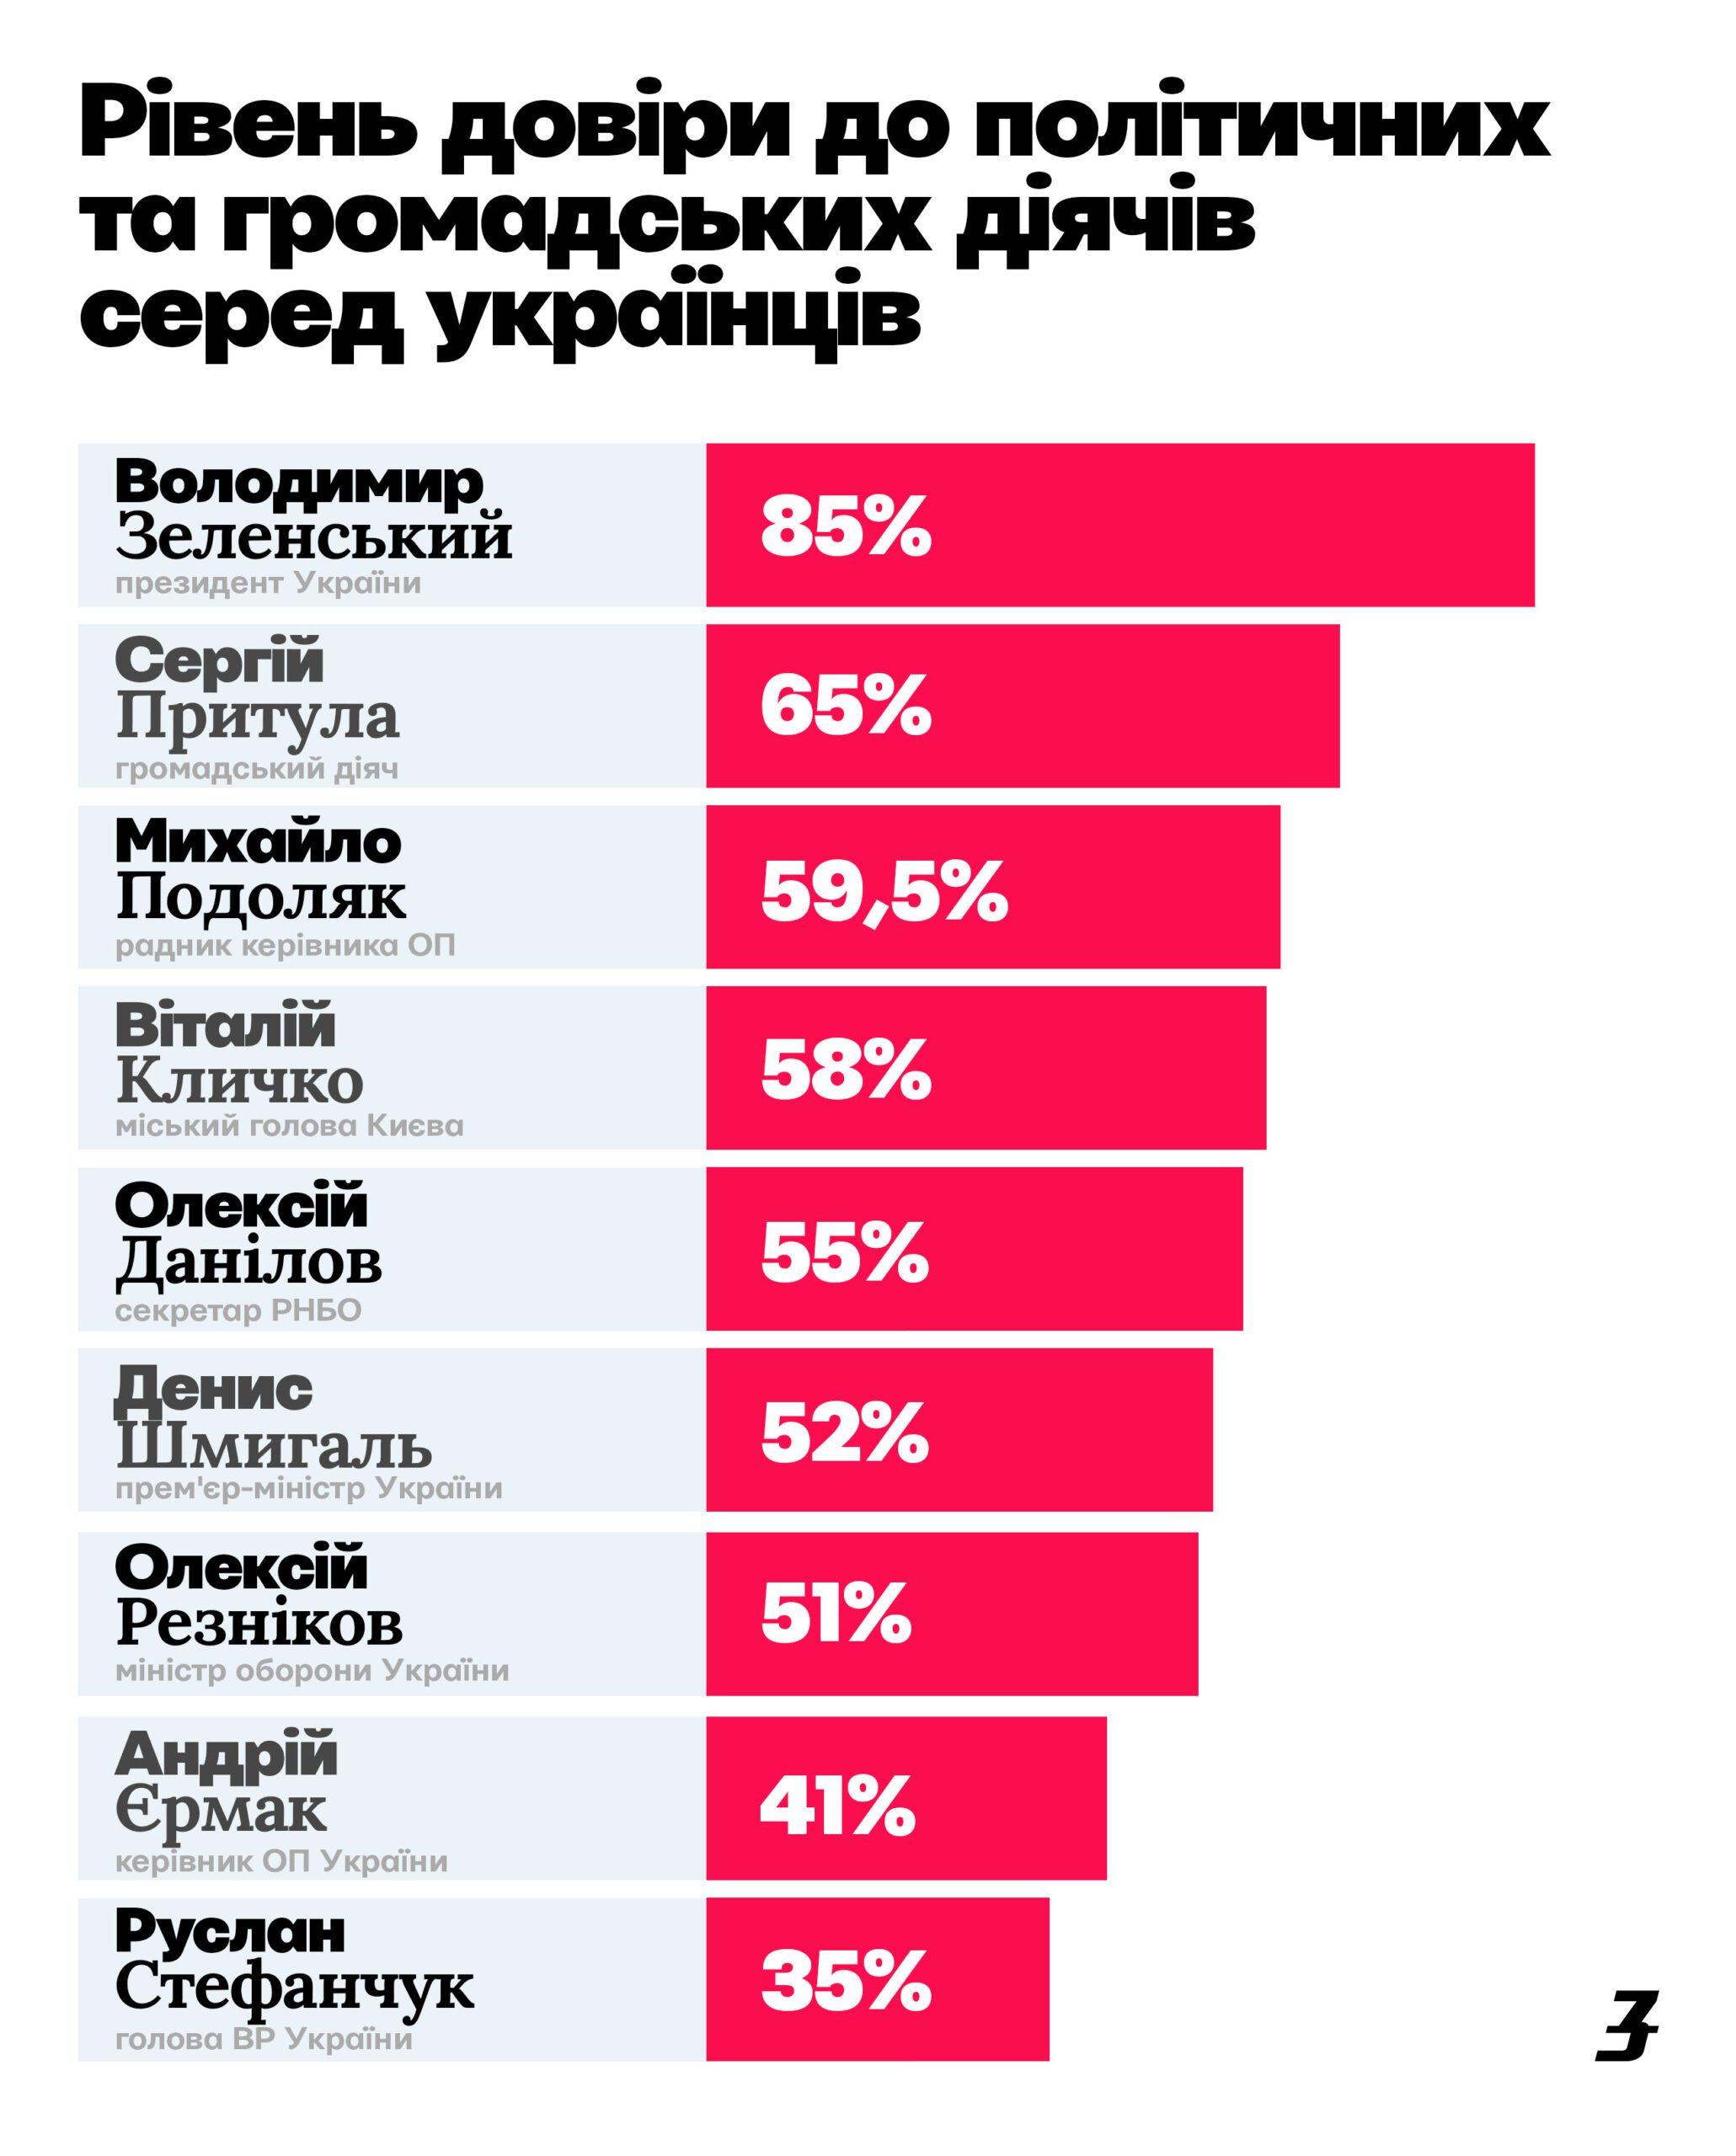 рівень довіри до політичних та громадських діячів серед укранців